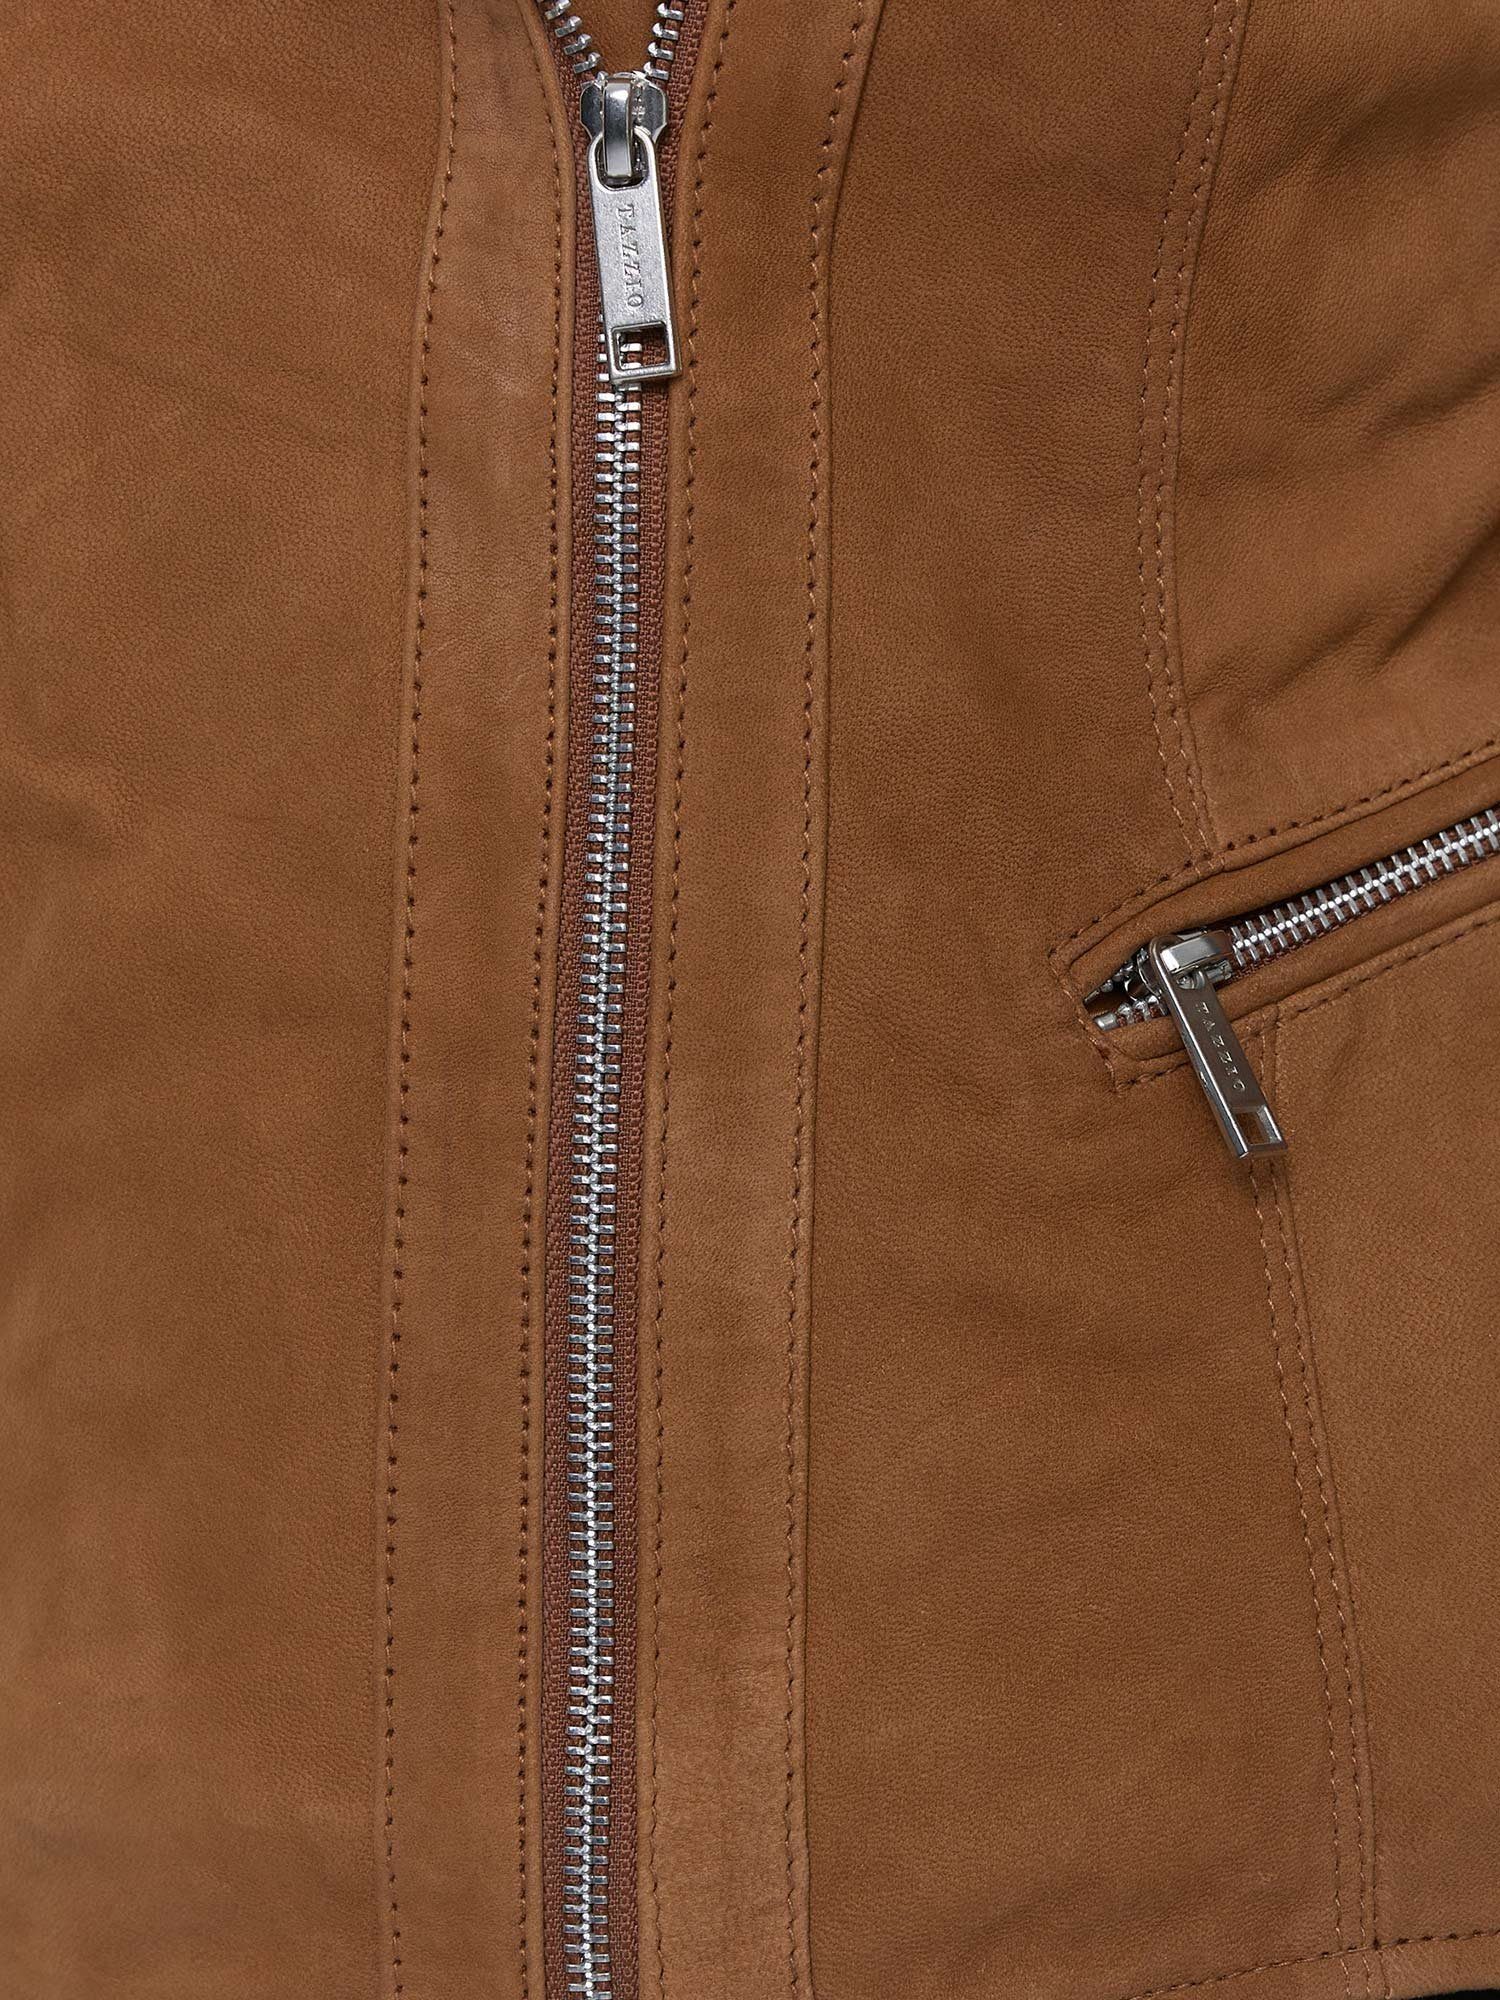 Damen Look Biker Jacke Zipper-Details F500 Leder & camel mit Reverskragen im Lederjacke Tazzio